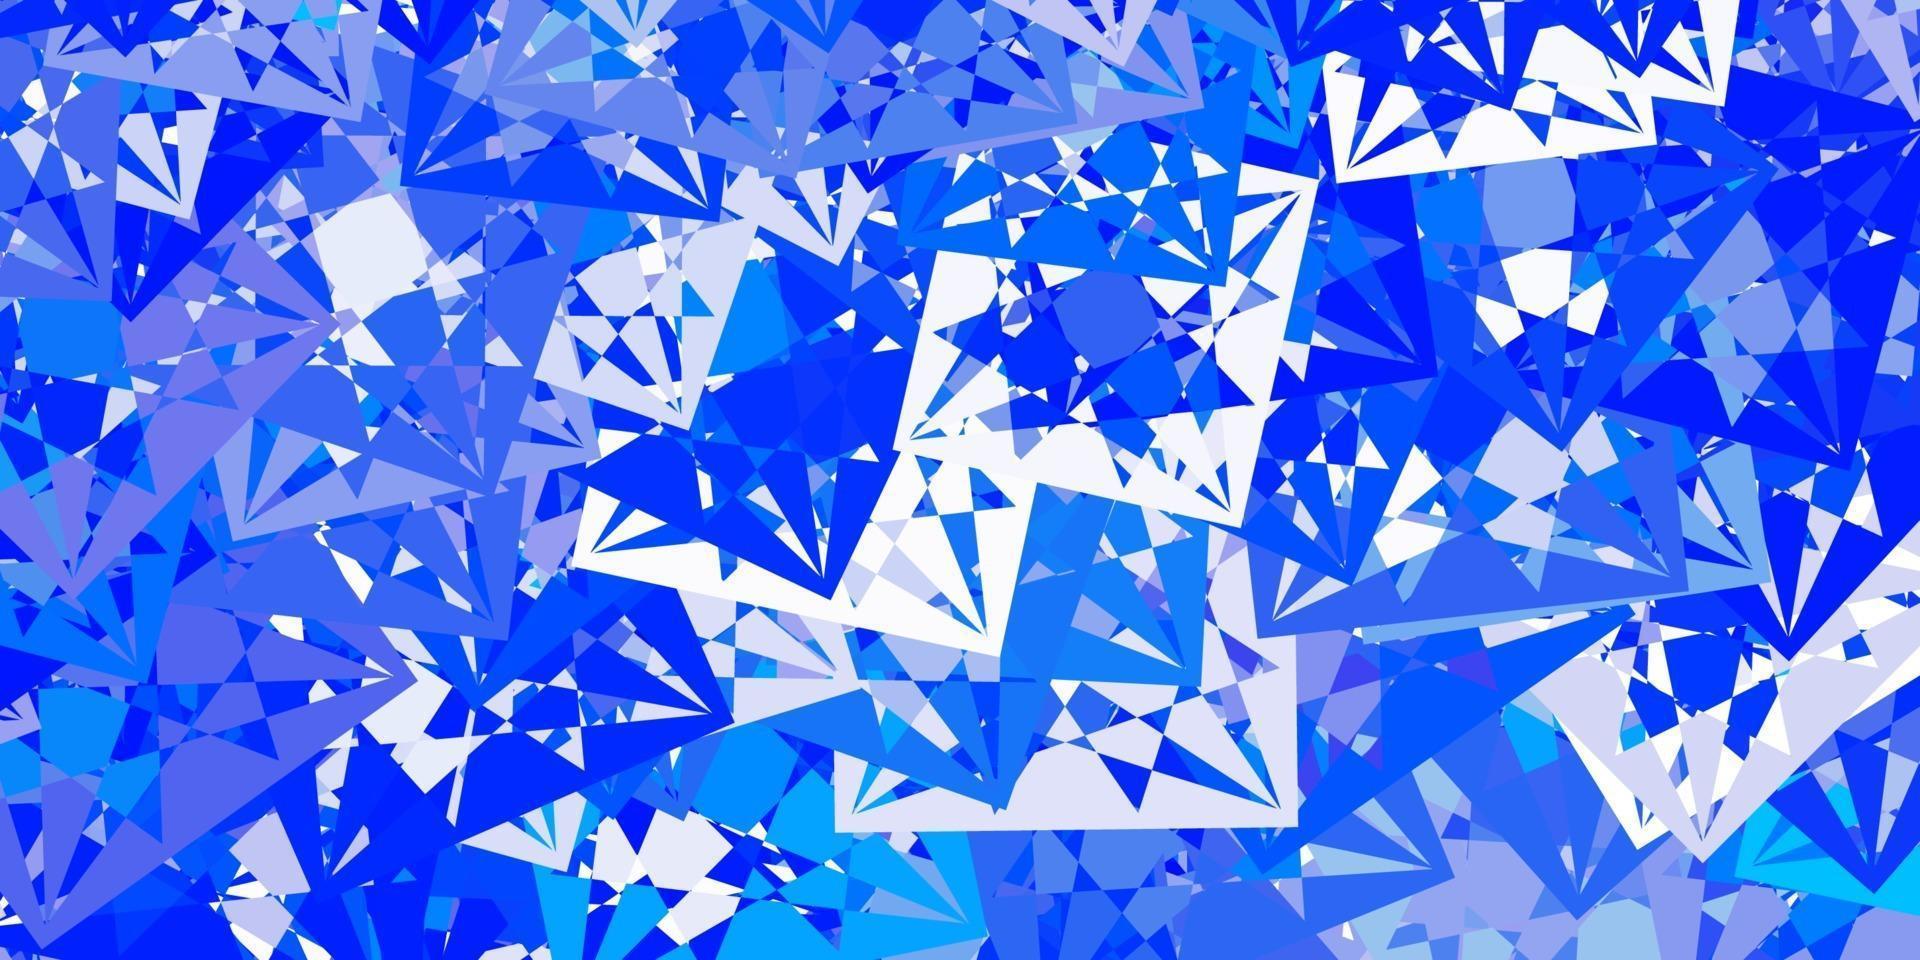 patrón de vector azul claro con formas poligonales.